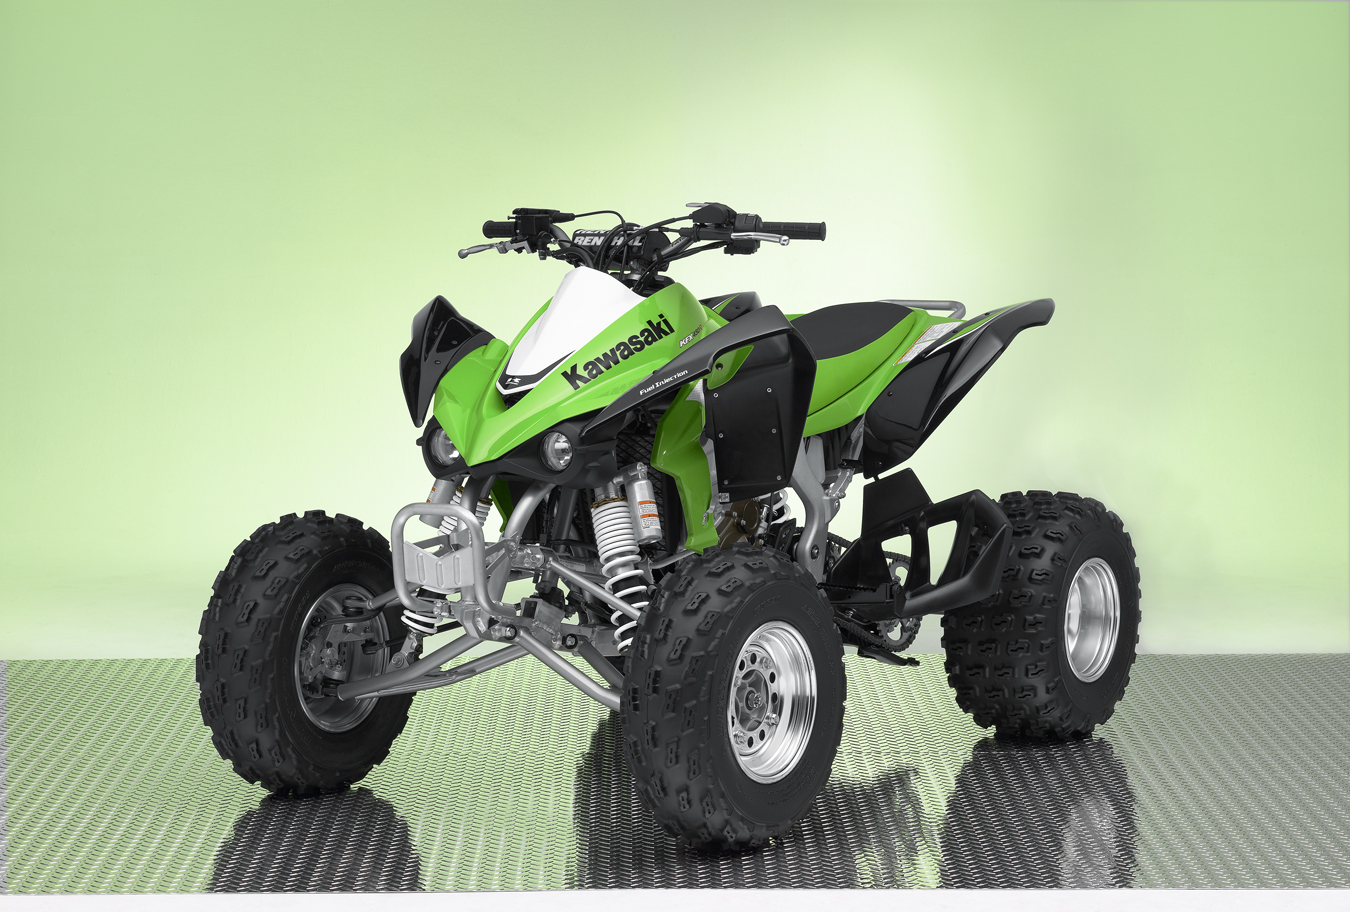 Kawasaki Introduces the Newest Race Ready ATV the 